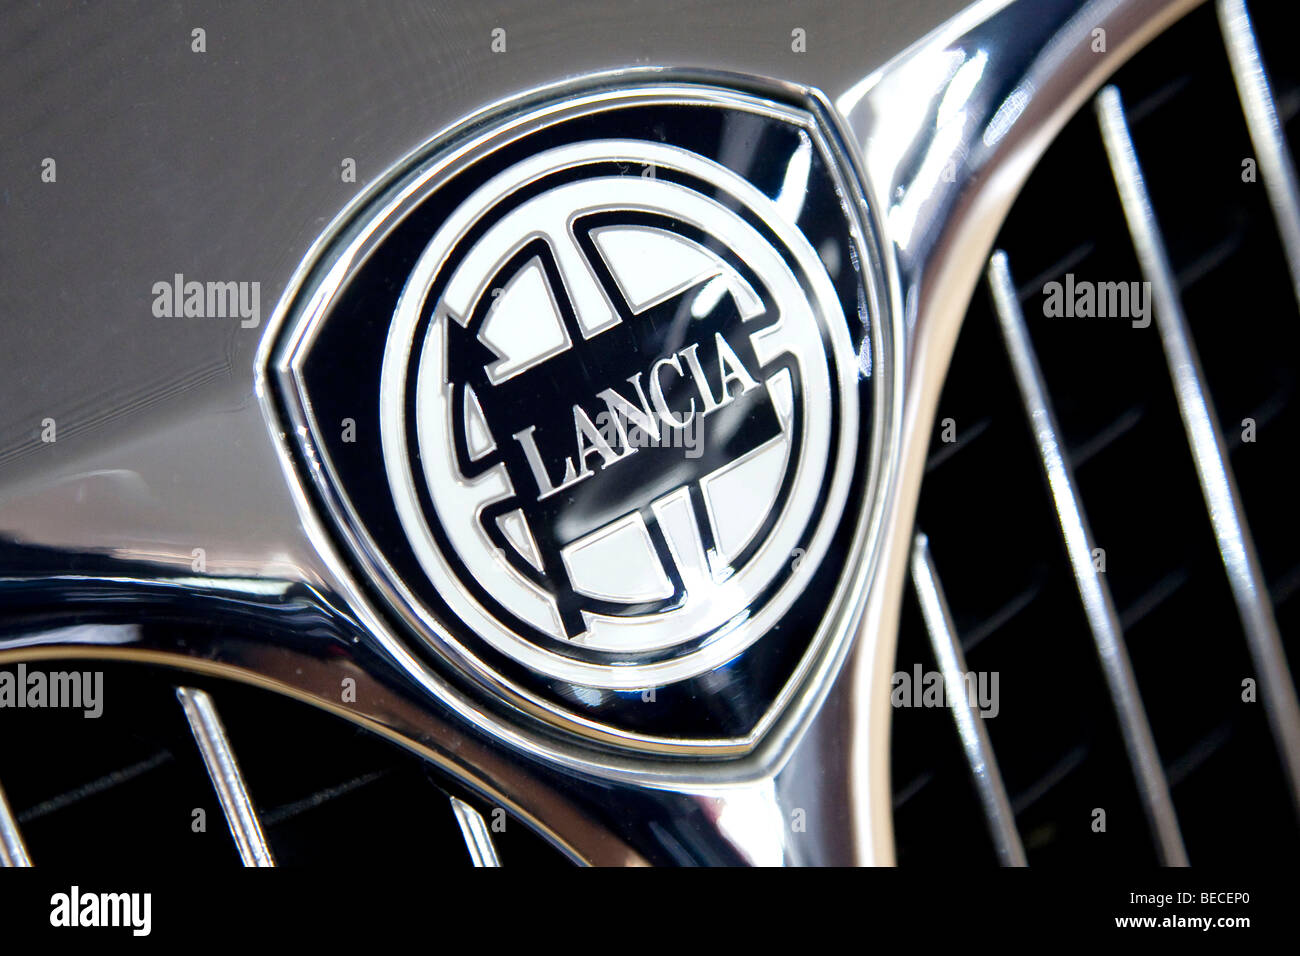 Lancia emblem on a car Stock Photo